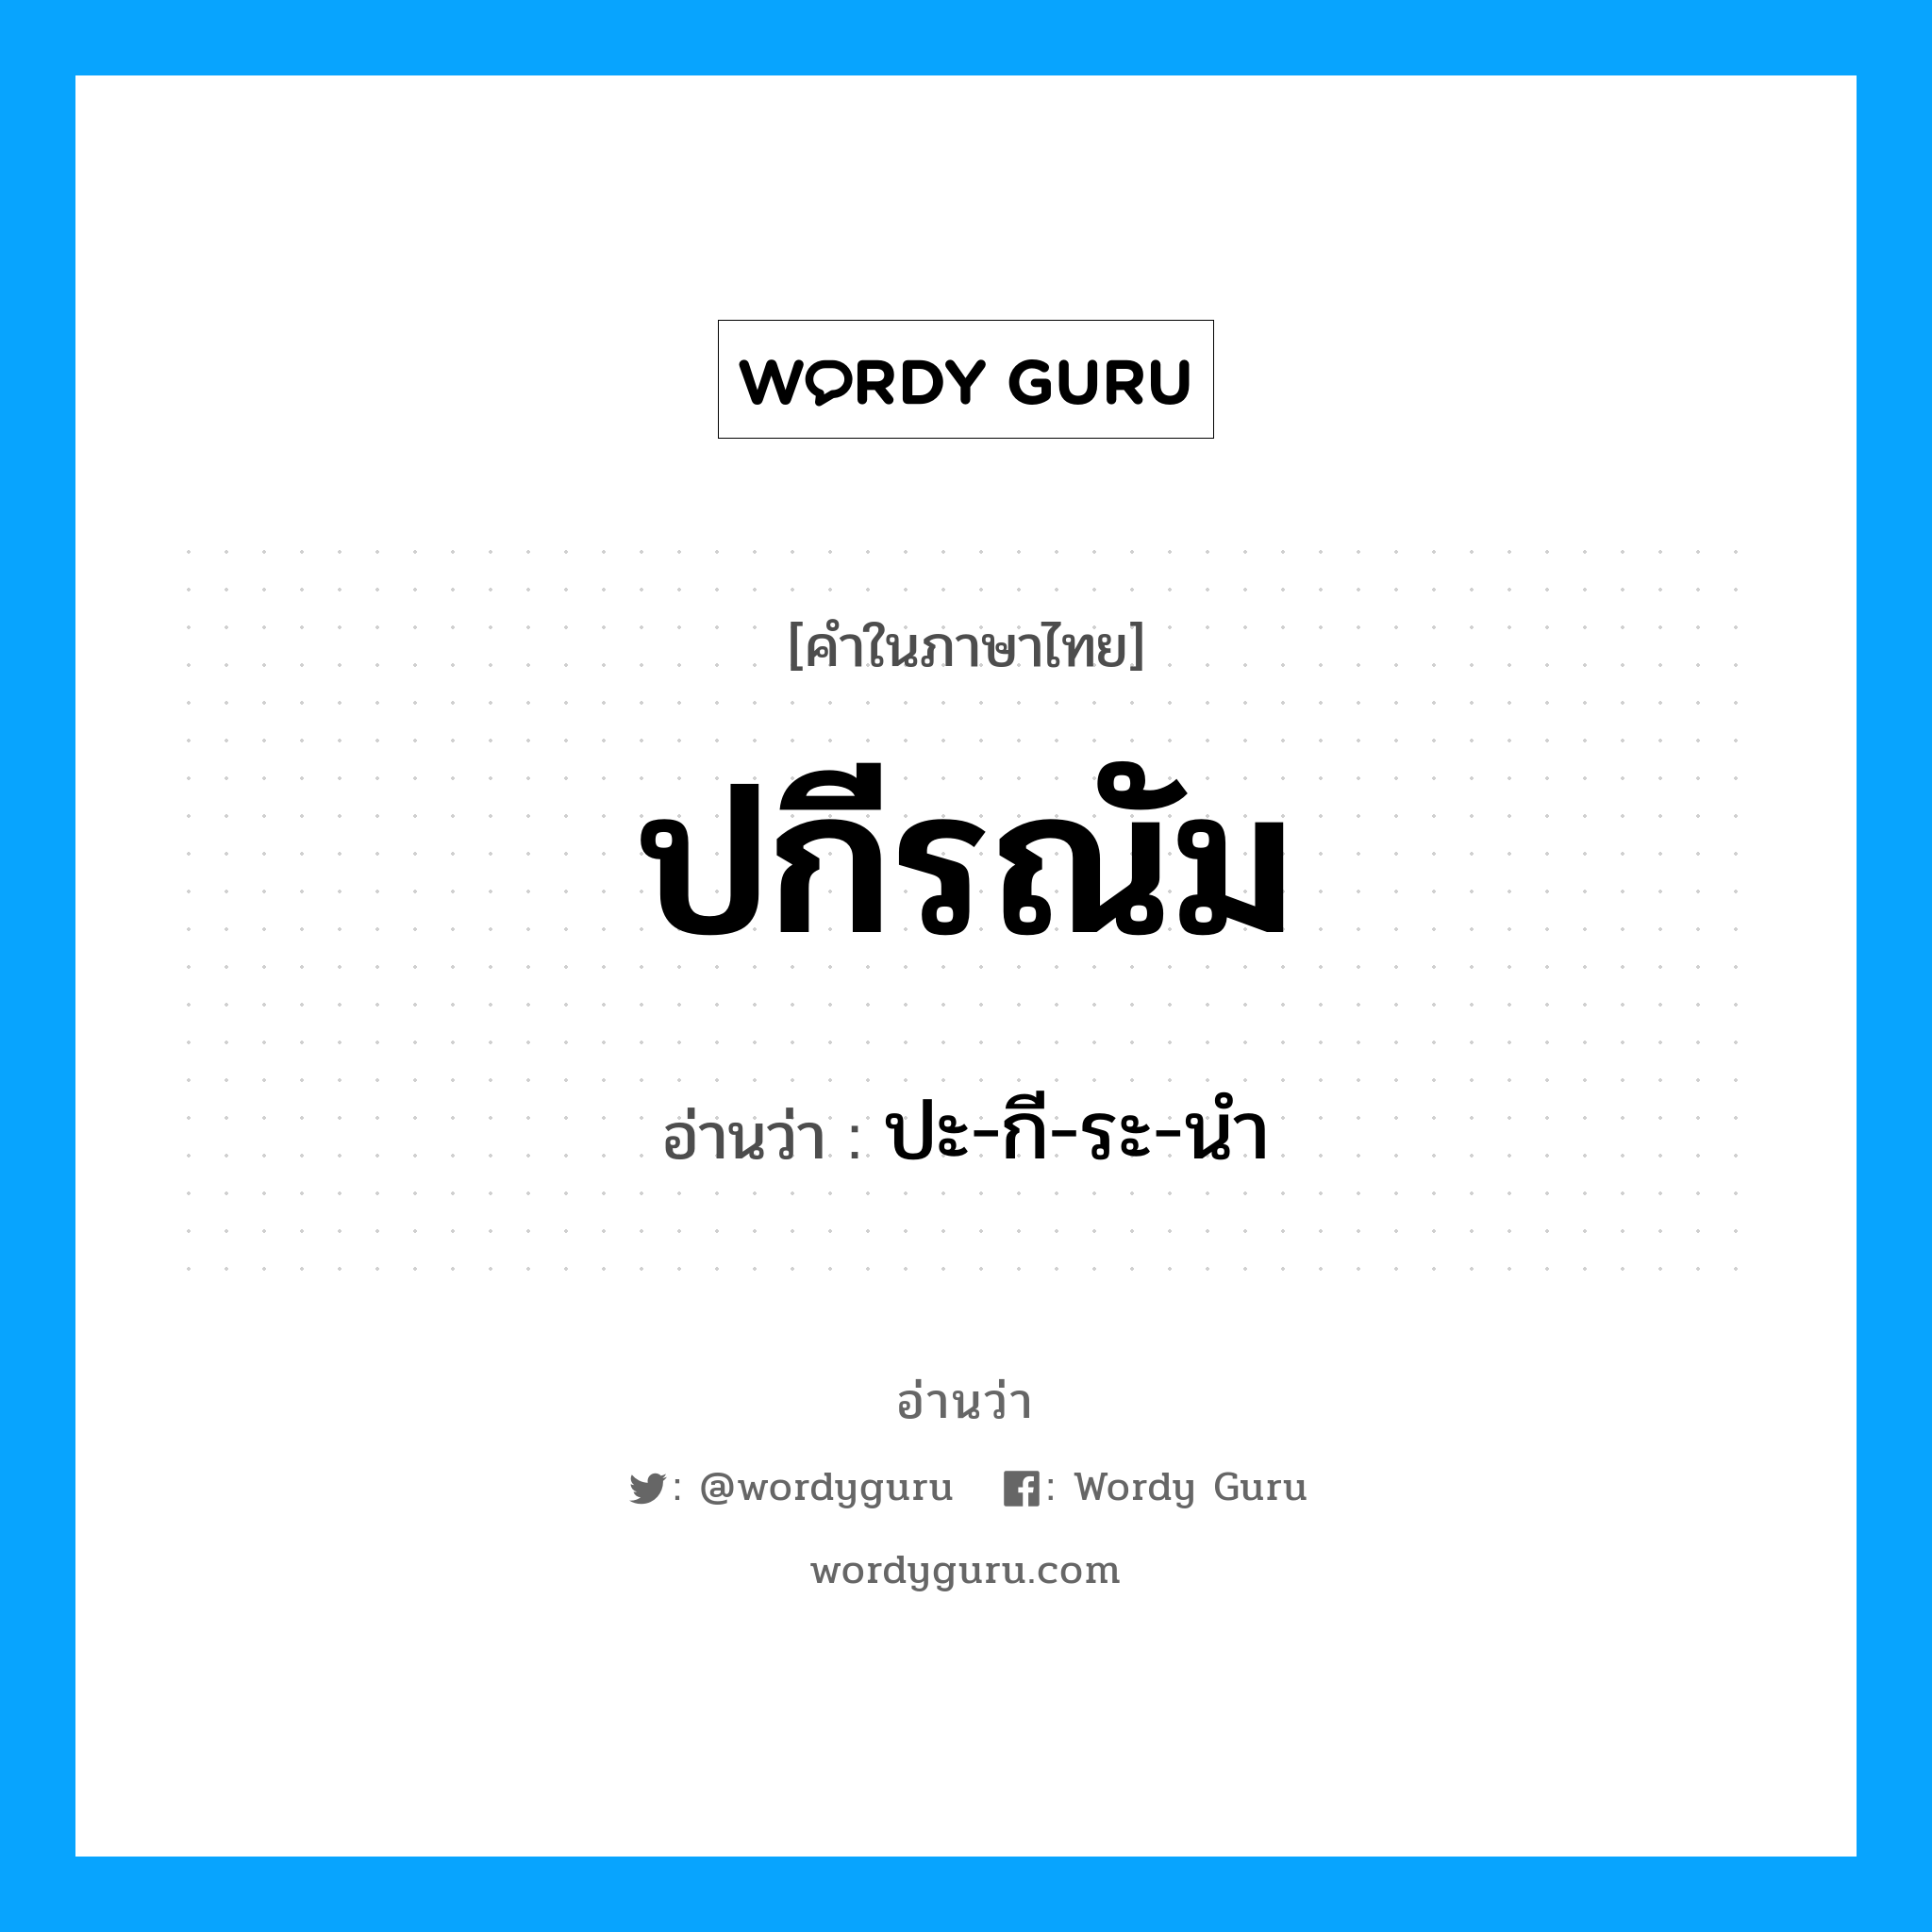 ปกีรณัม อ่านว่า?, คำในภาษาไทย ปกีรณัม อ่านว่า ปะ-กี-ระ-นำ